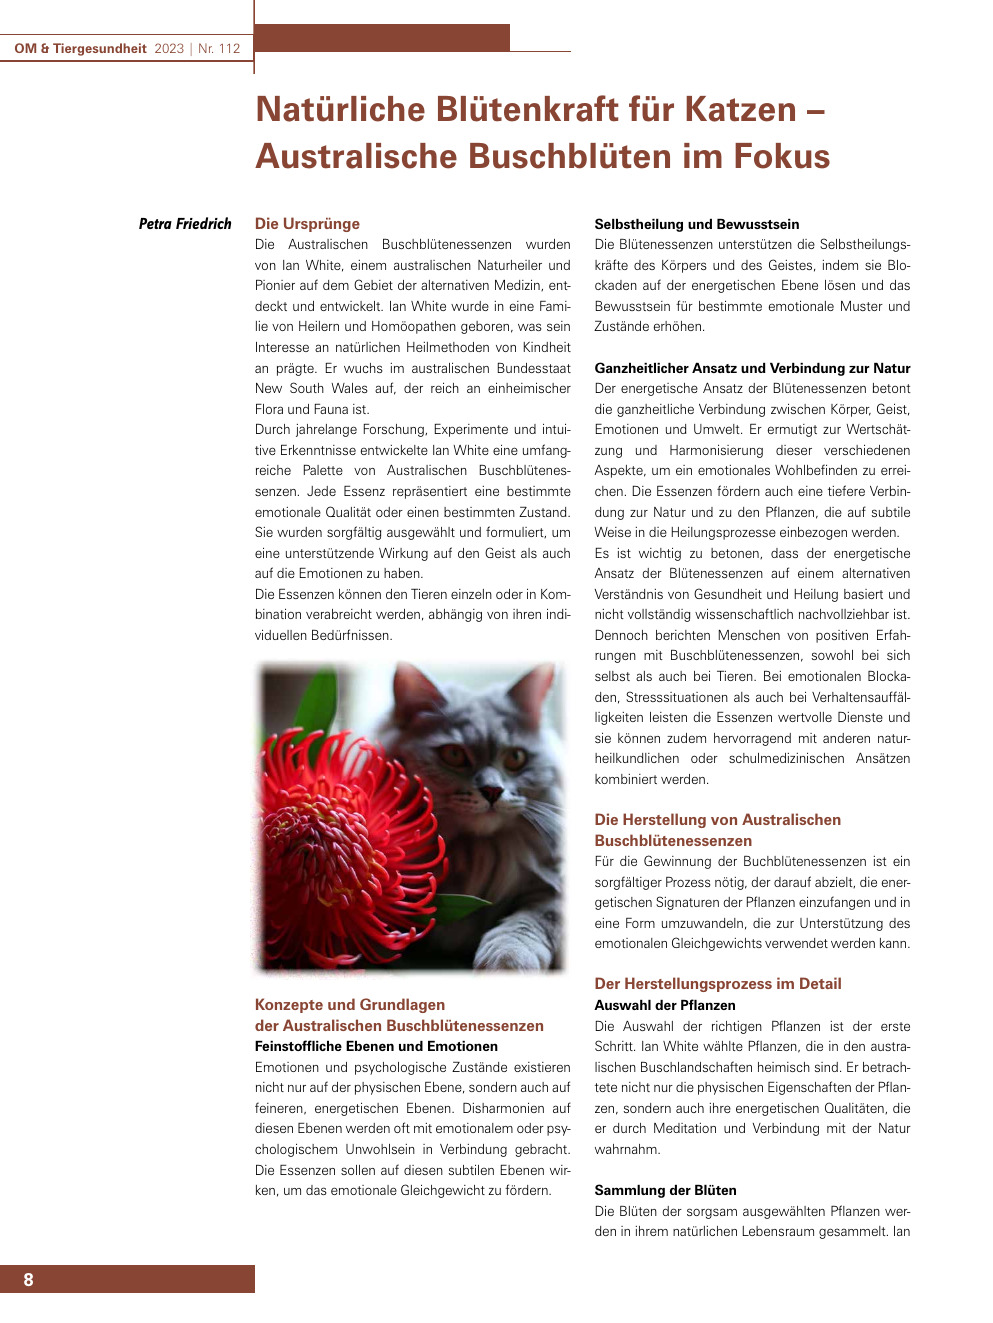 Natürliche Blütenkraft für Katzen – Australische Buschblüten im Fokus